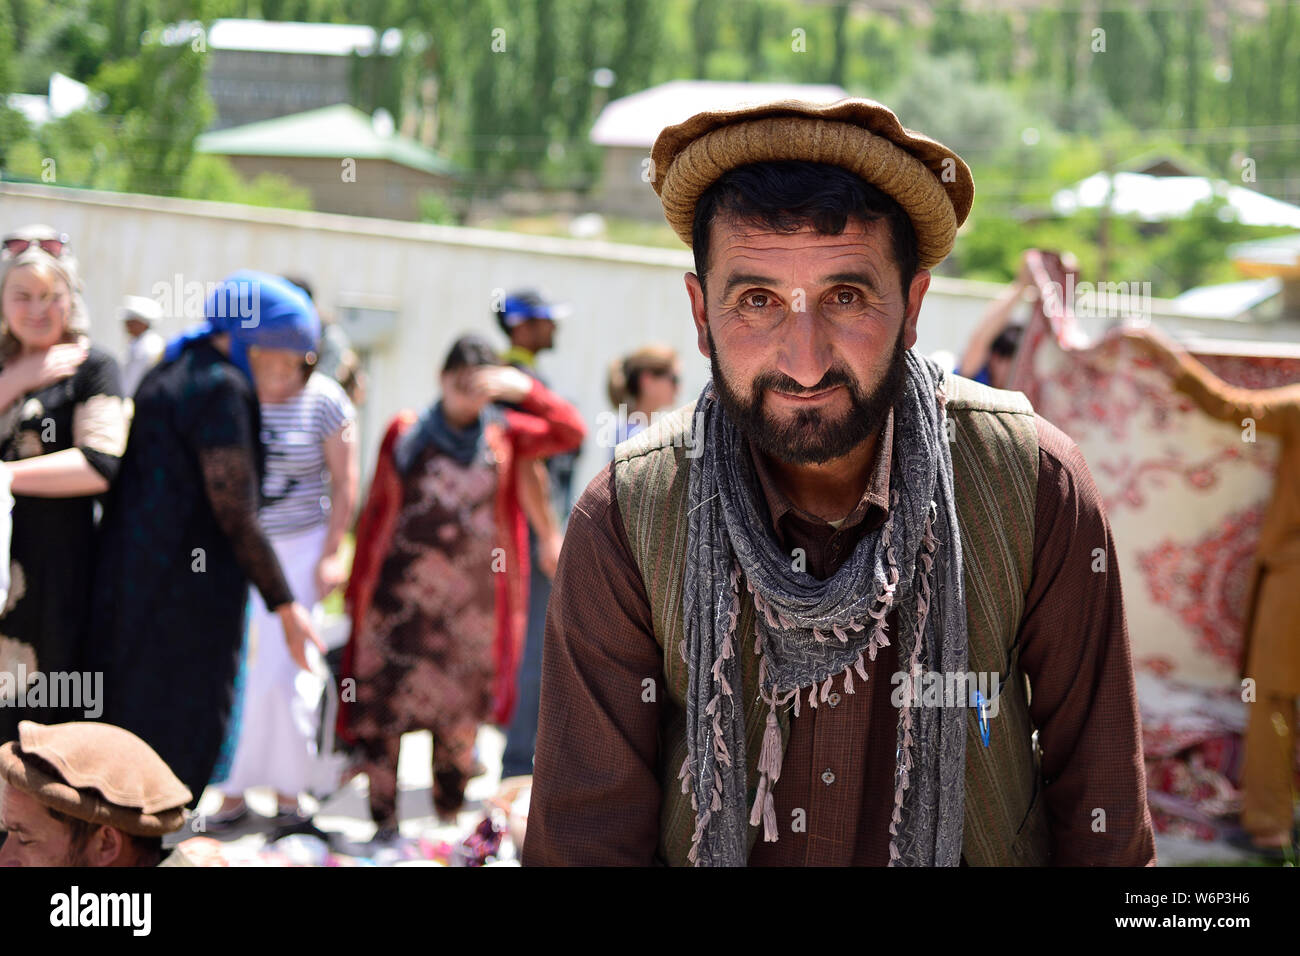 KHOROG, PAMIR, TADJIKISTAN - 06 juillet 2019 : Portrait de la population de l'Afghanistan qui est la négociation sur le marché au Tadjikistan dans le Pamir Mo Banque D'Images